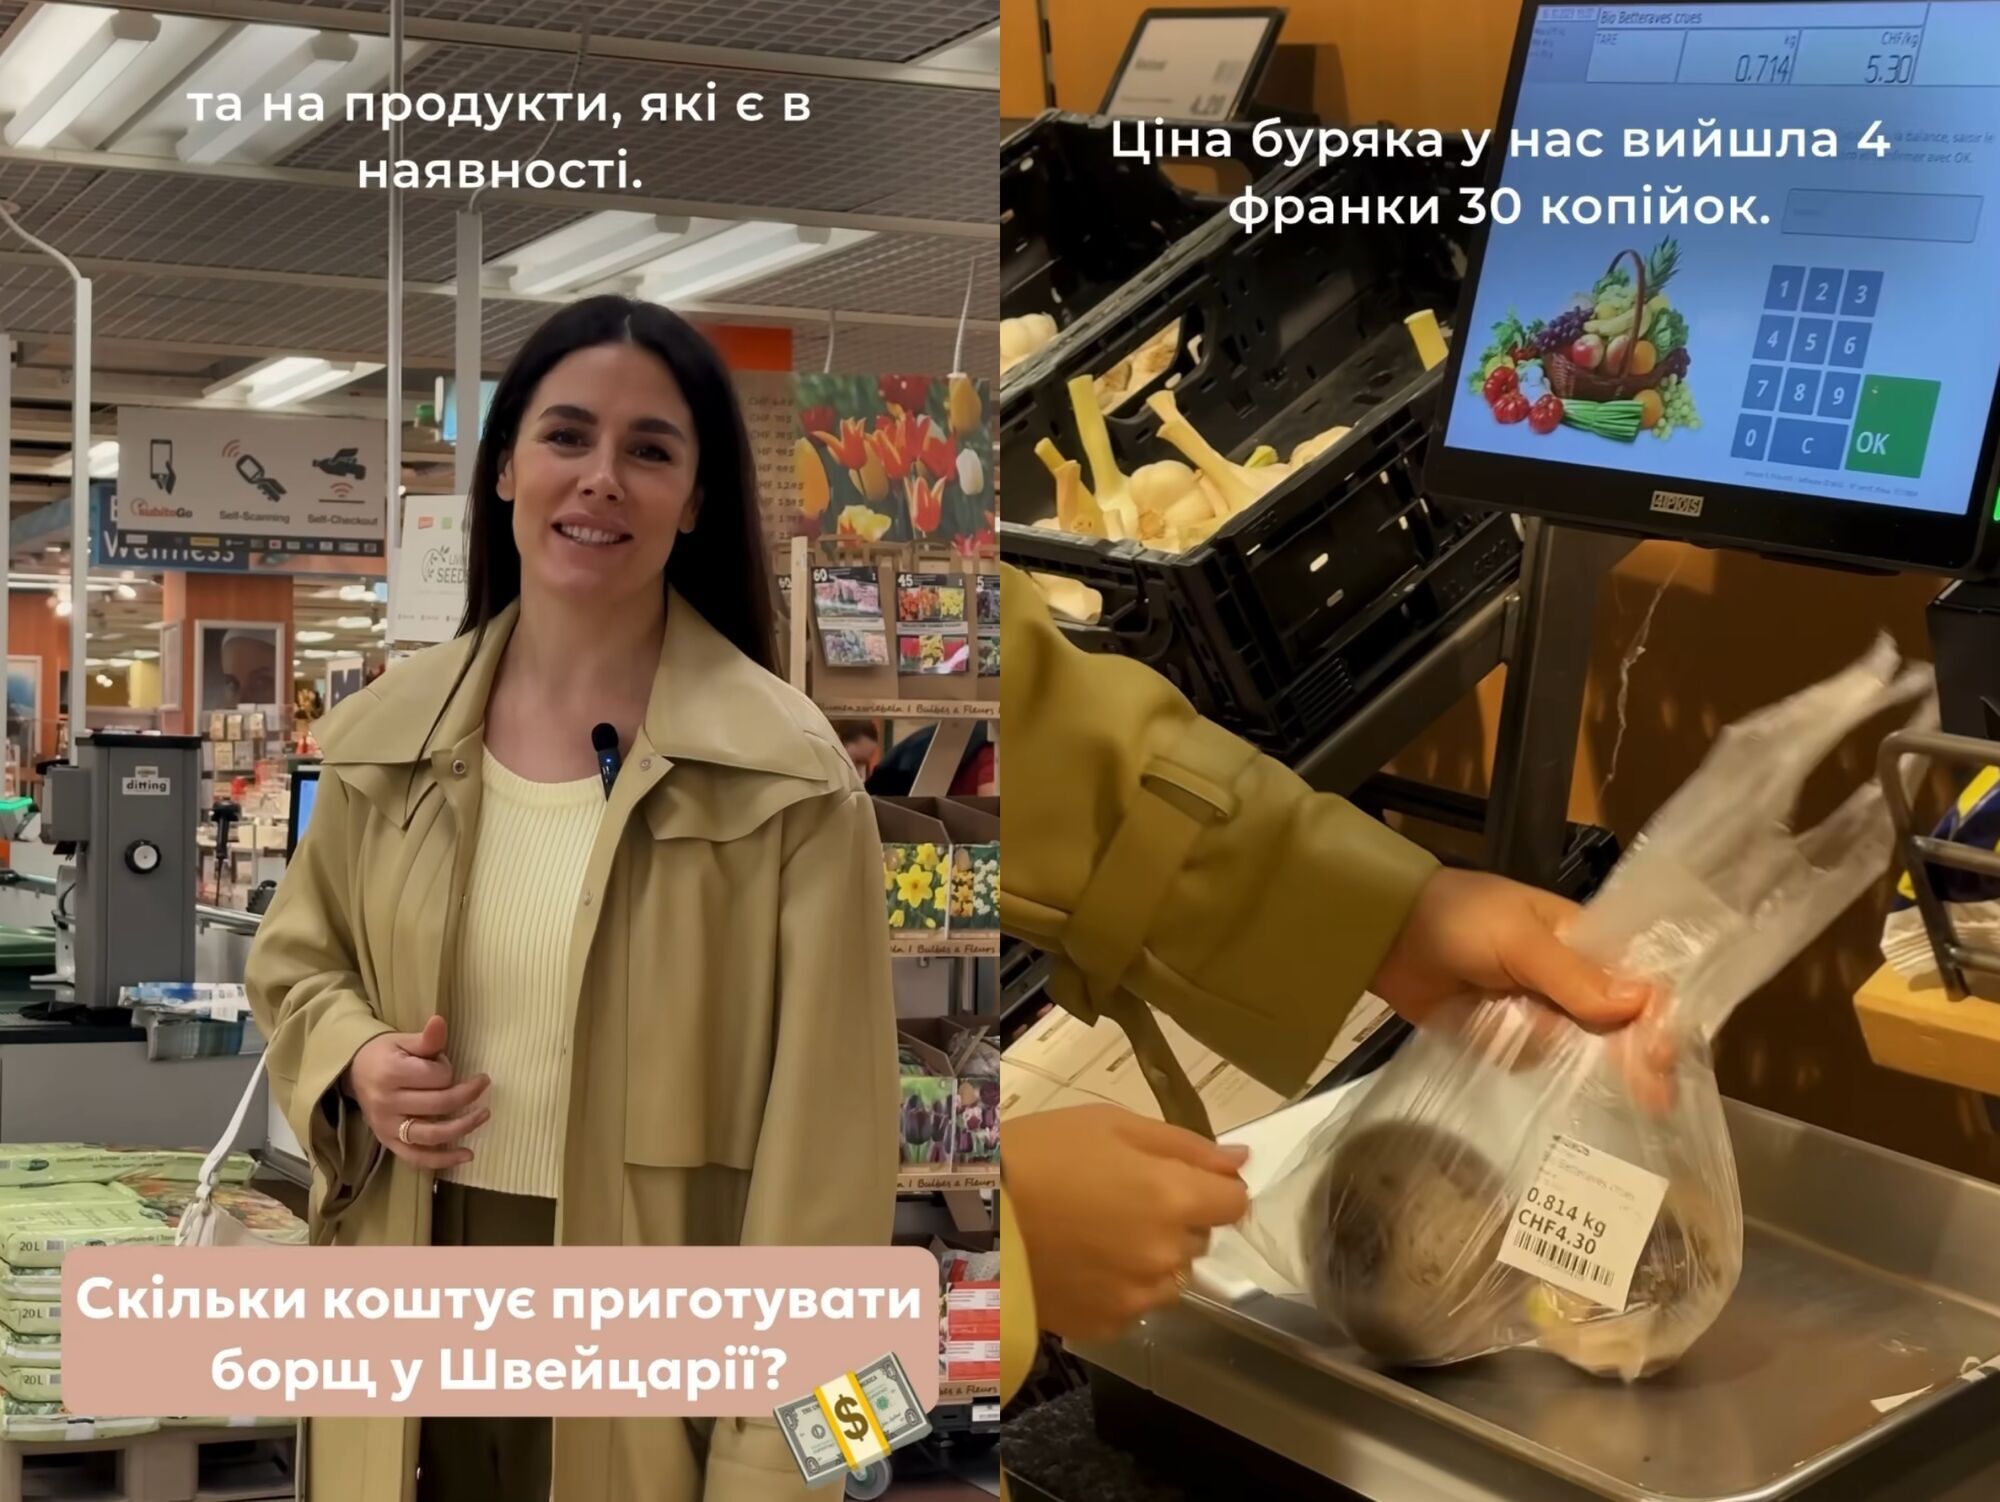 Скільки коштує приготувати борщ у Швейцарії: Іванна Онофрійчук зняла відео з супермаркету, де лише капуста обійшлася в 350 грн